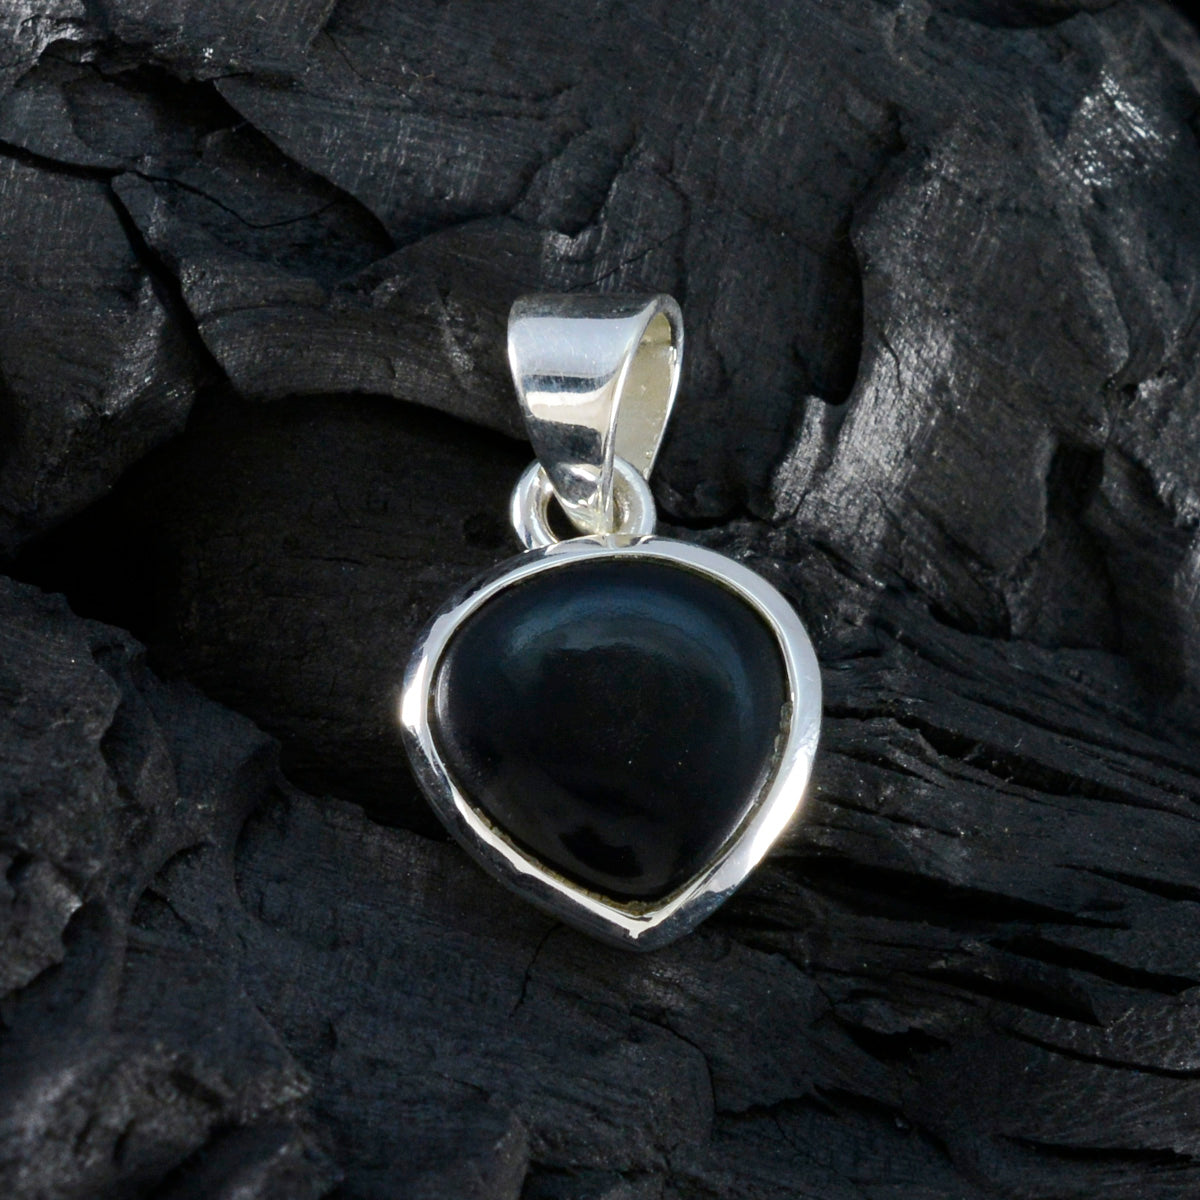 Riyo elegante piedra preciosa corazón cabujón negro ónix negro colgante de plata de ley 931 regalo para el día del maestro